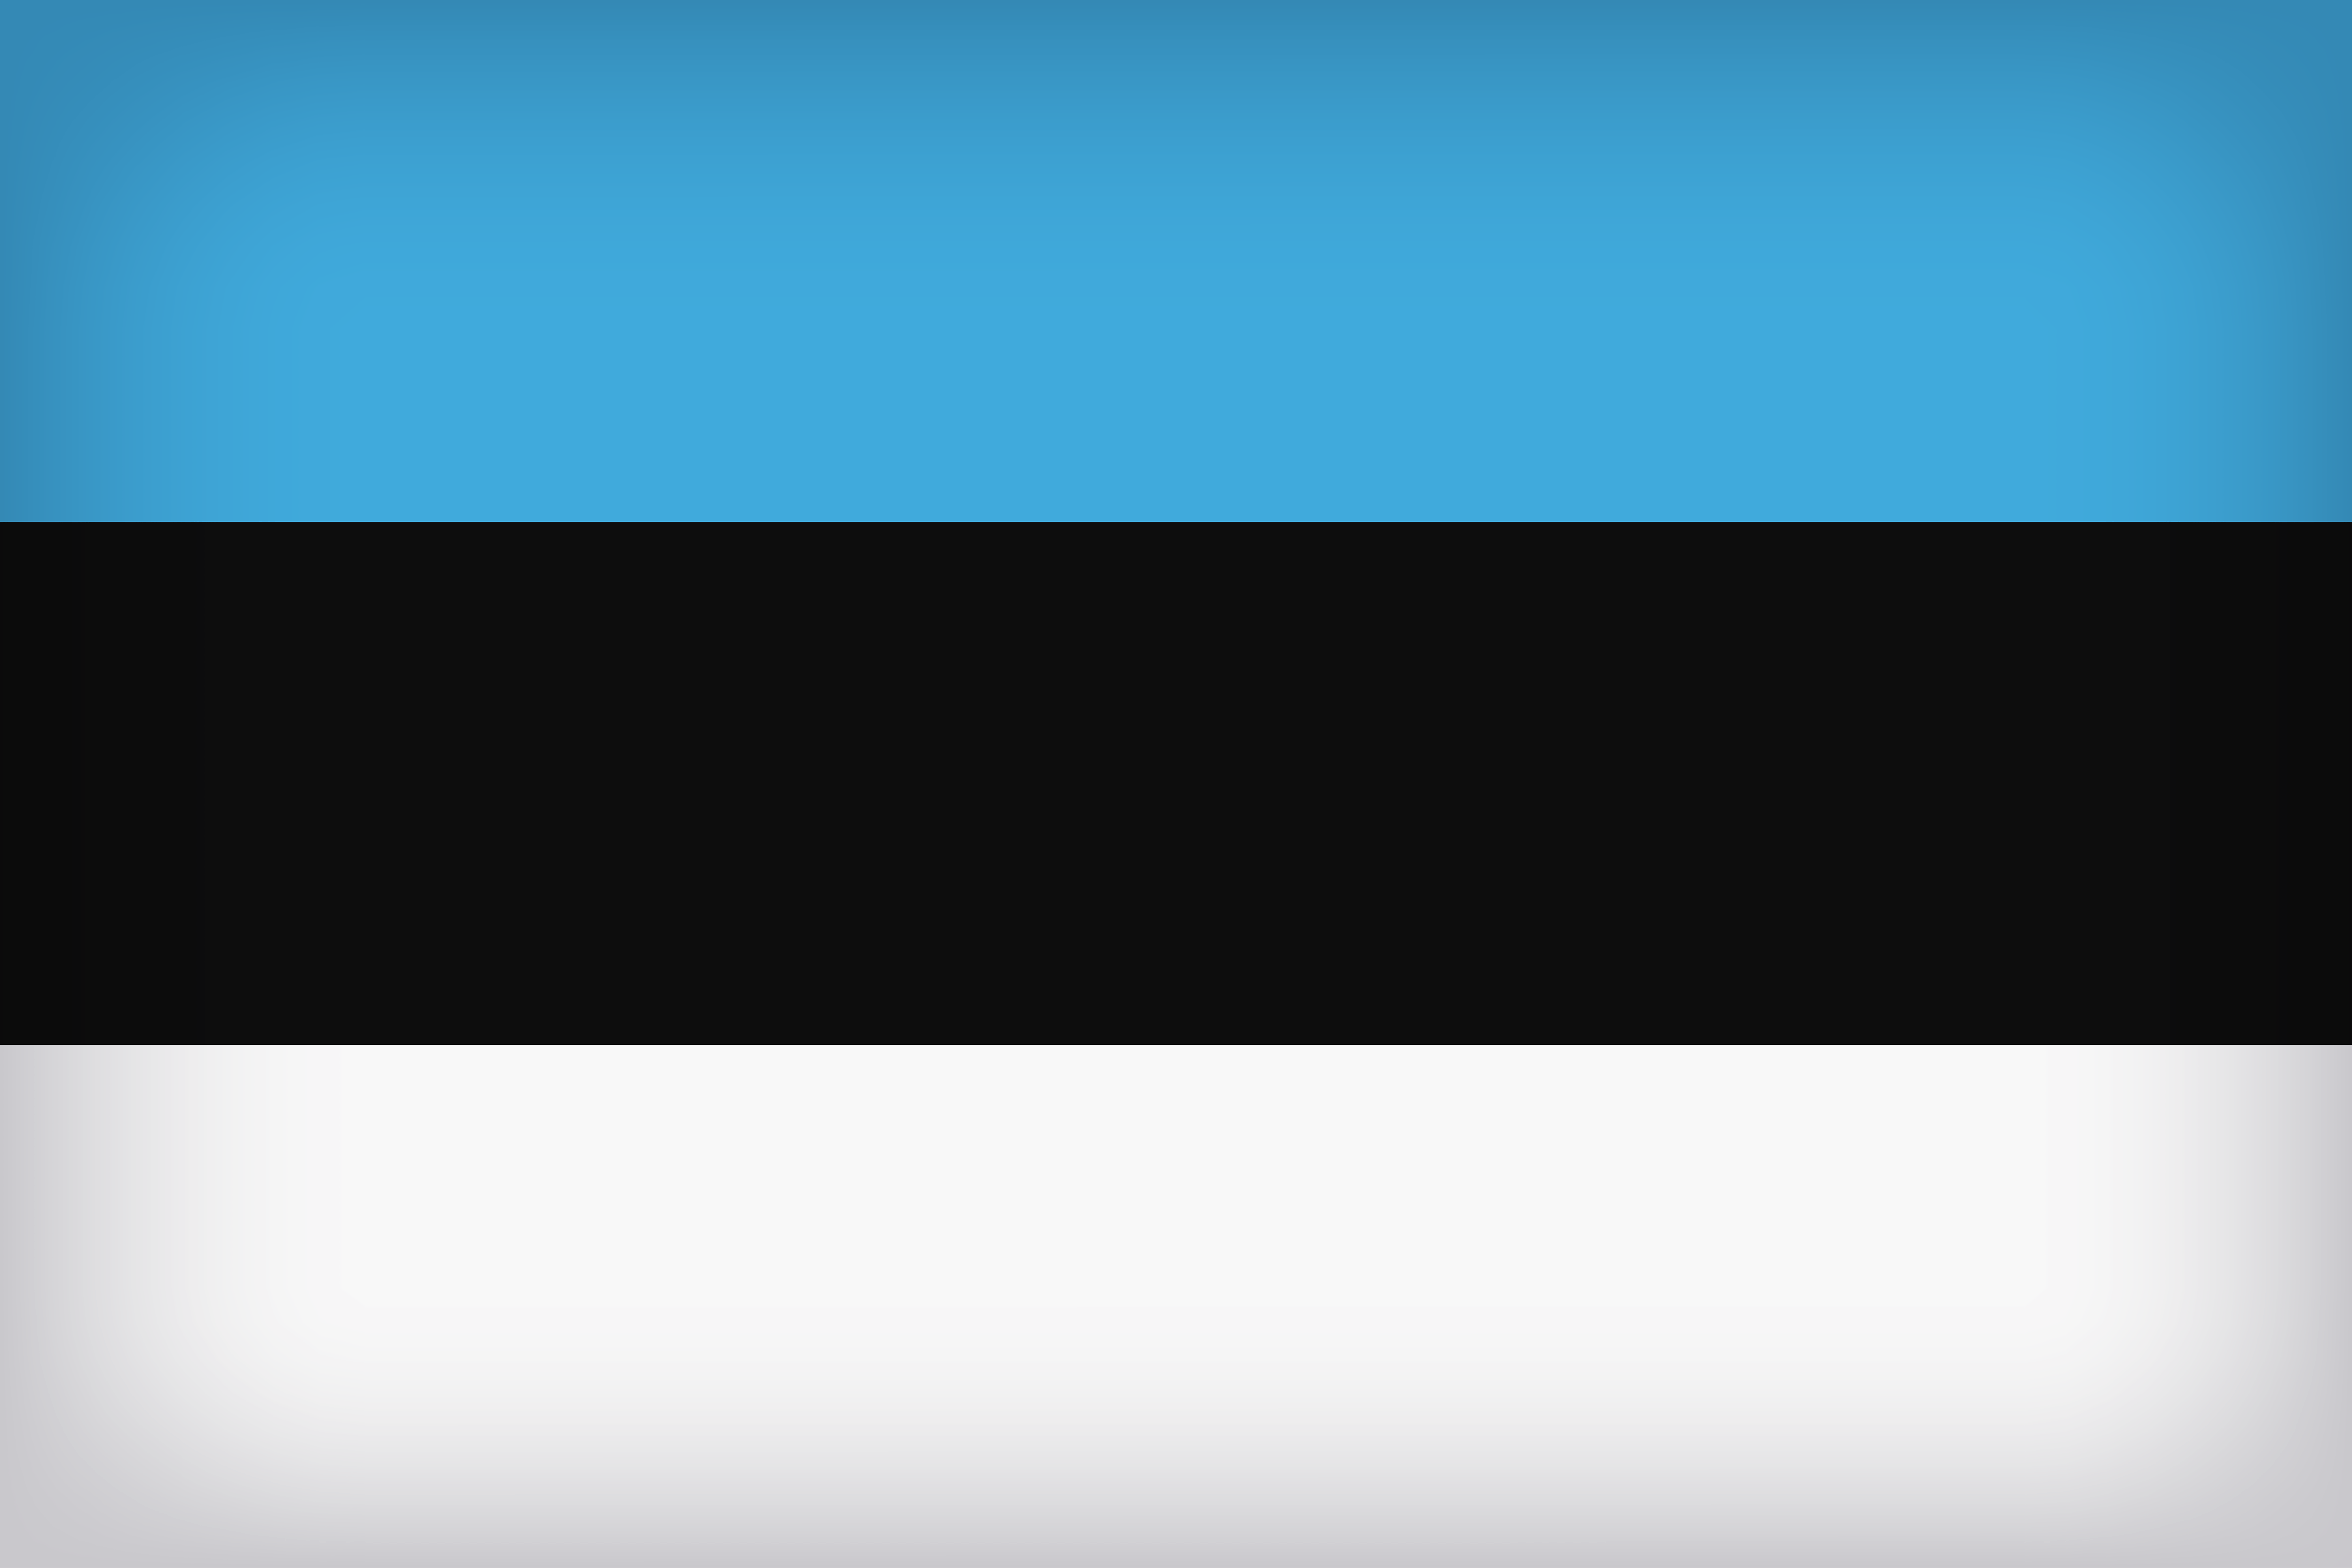 Estonia Large Flag Quality Image